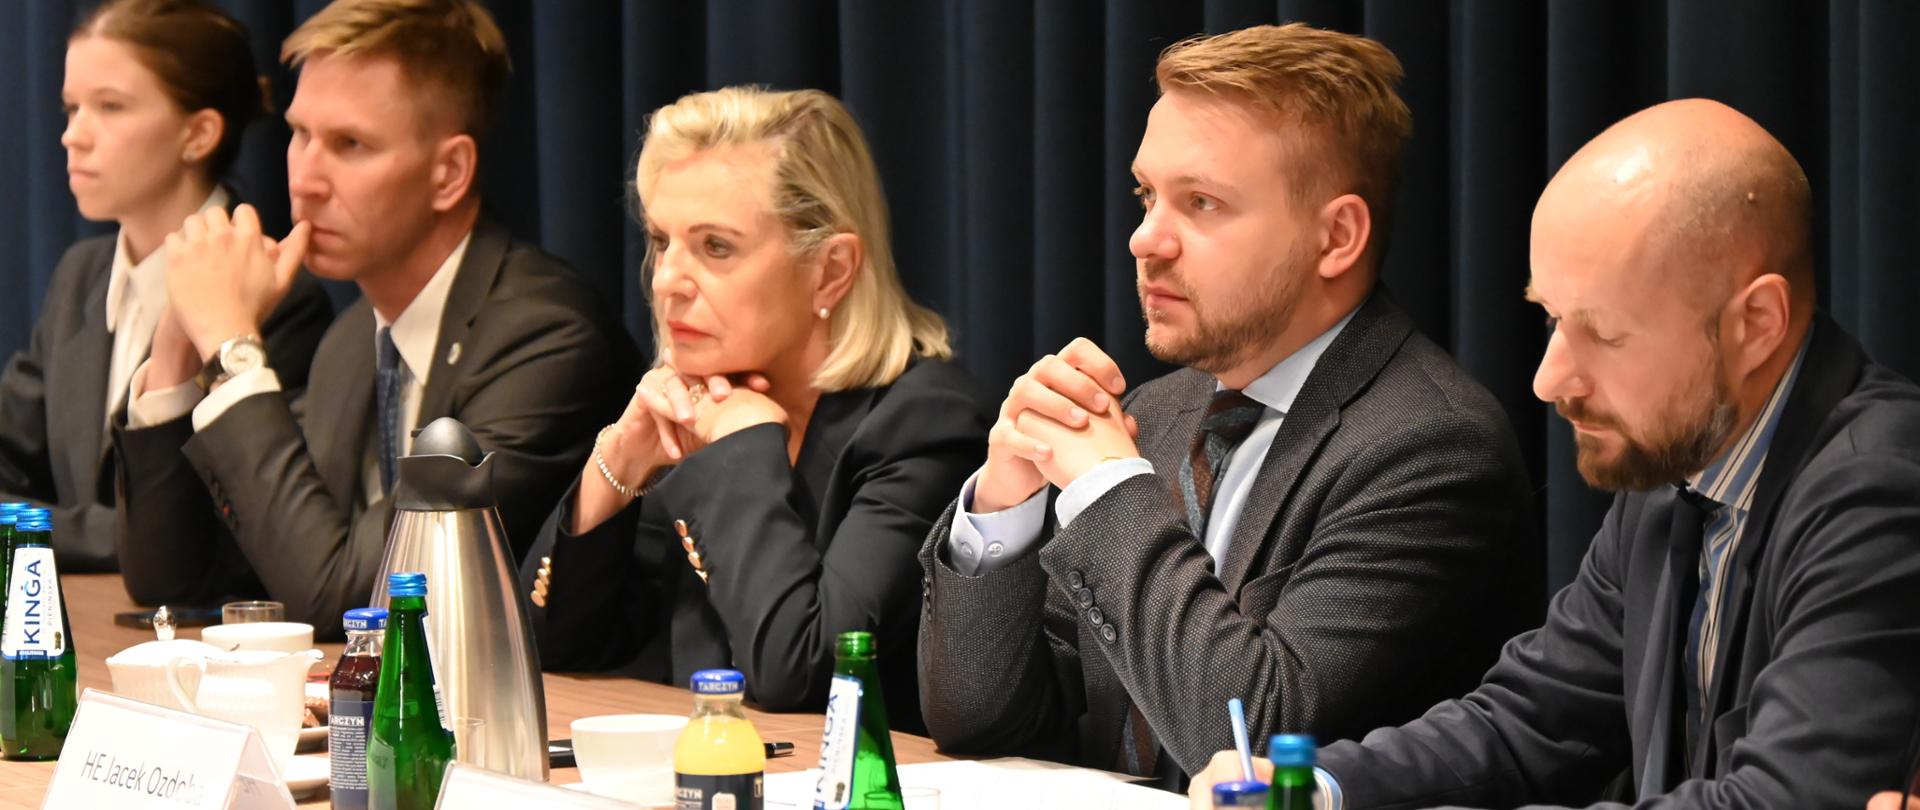 Przy stole pięć osób z delegacji polskiej. W centralnej części siedzi wiceminister klimatu i środowiska Jacek Ozdoba, a obok niego ambasador RP we Włoszech Anna Maria Anders.